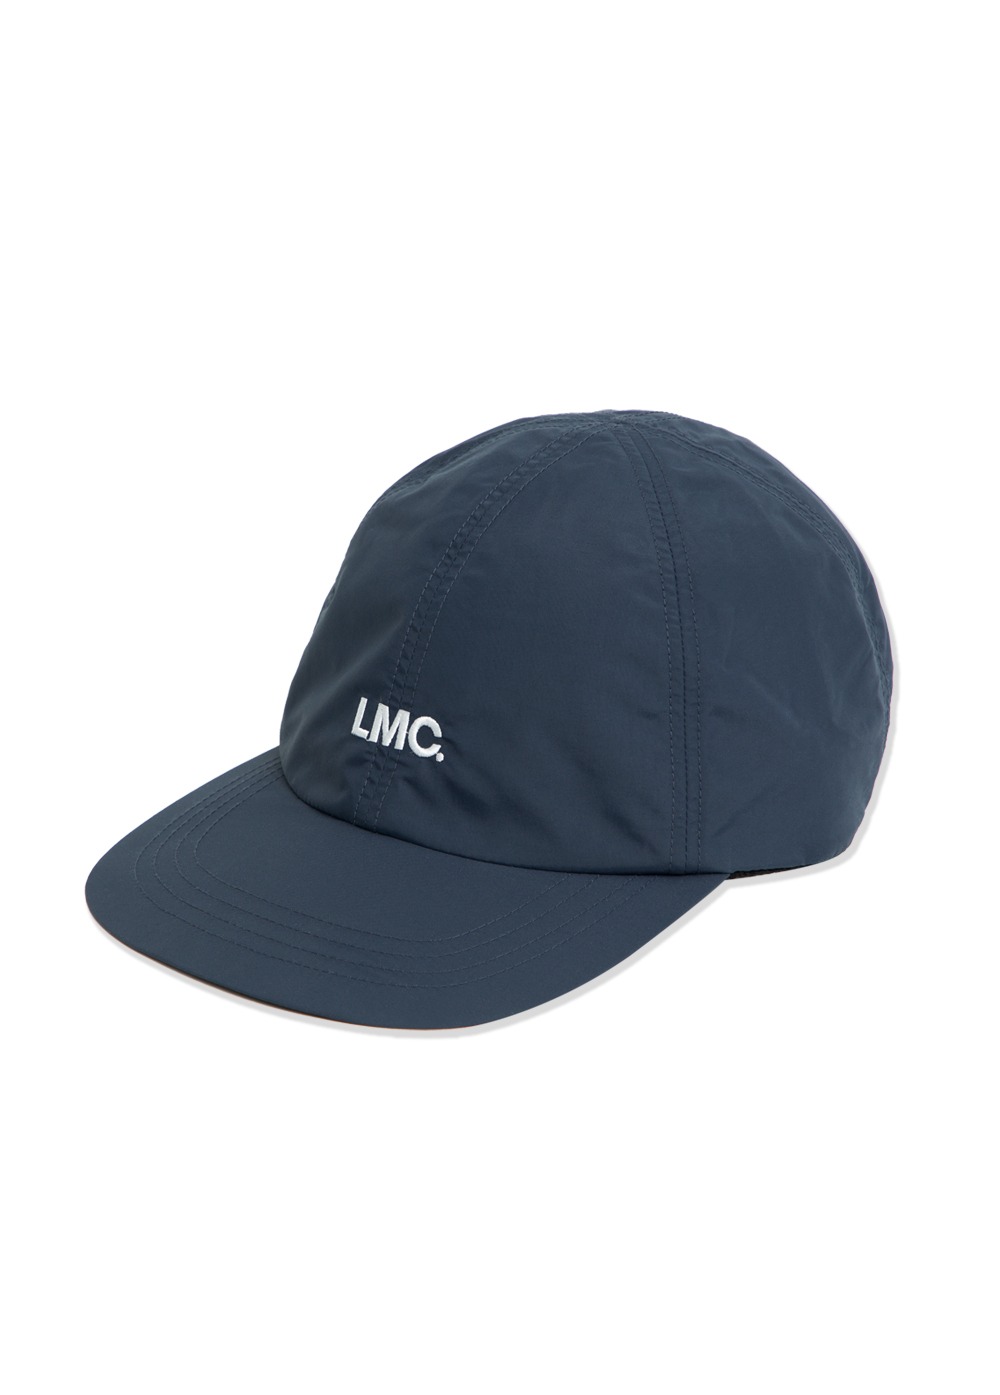 LMC NYLON OG 6 PANEL CAP navy